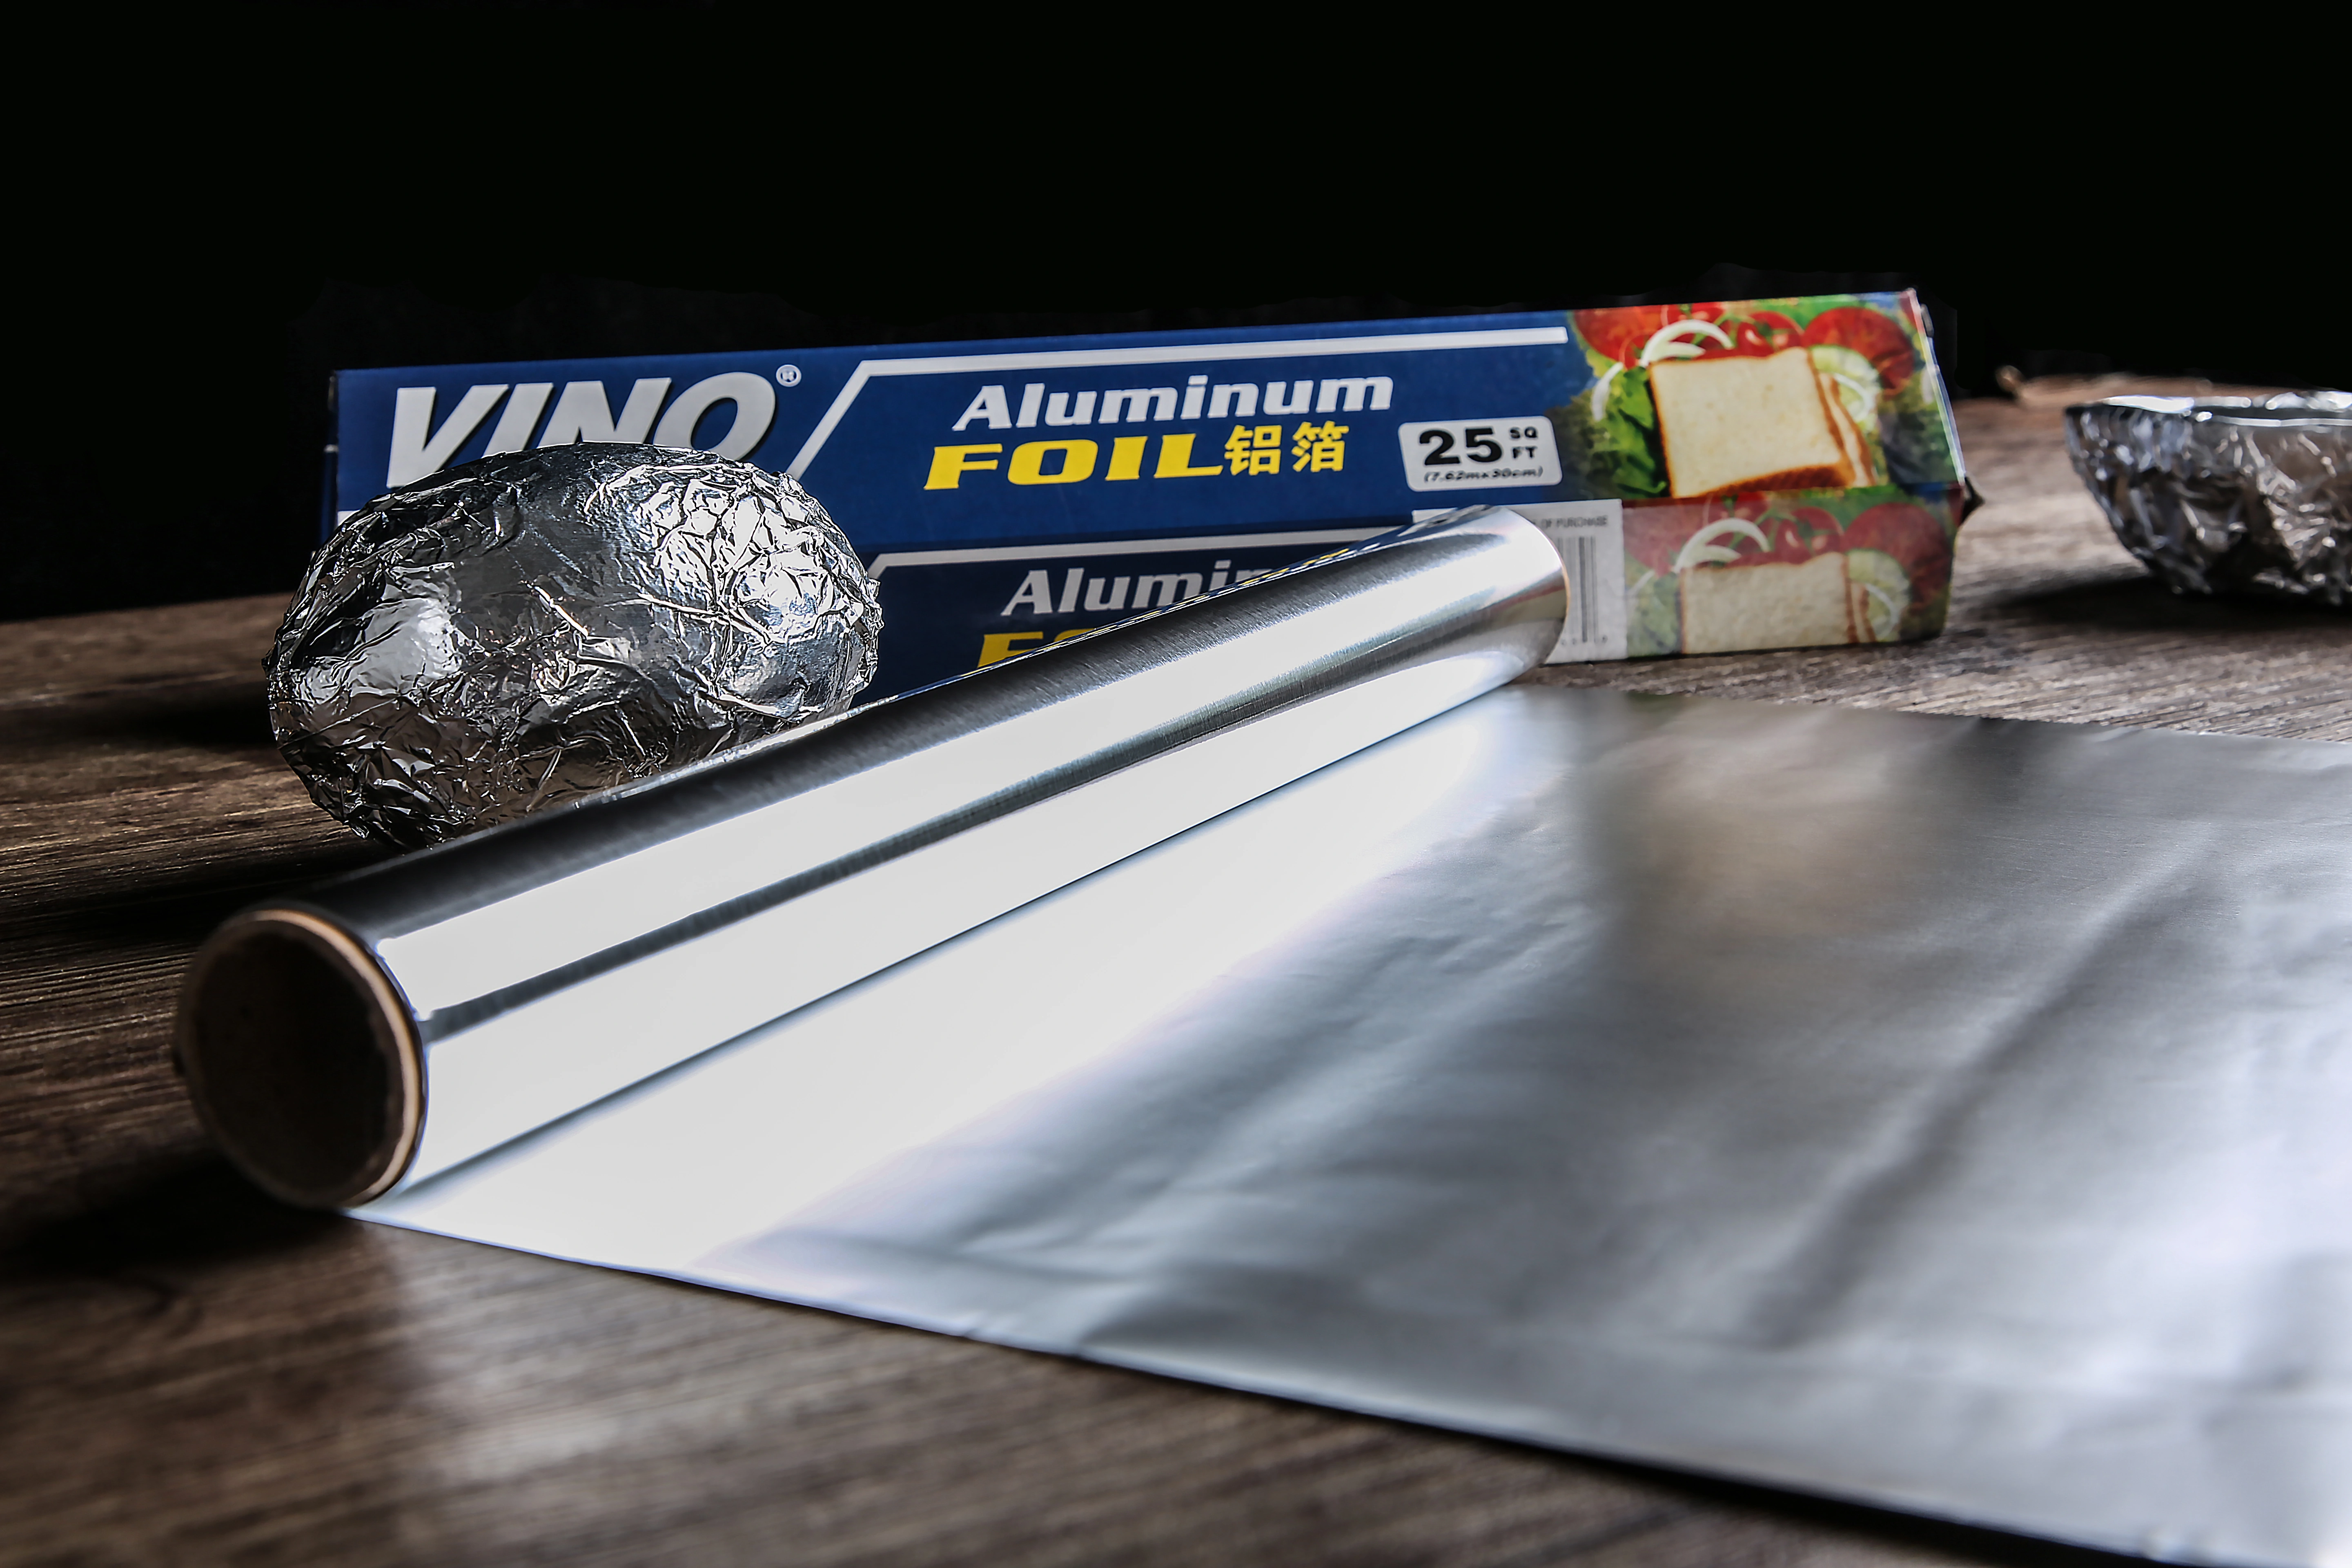 Papier aluminium 200 m x 30 cm - Alu pour Contact Alimentaire